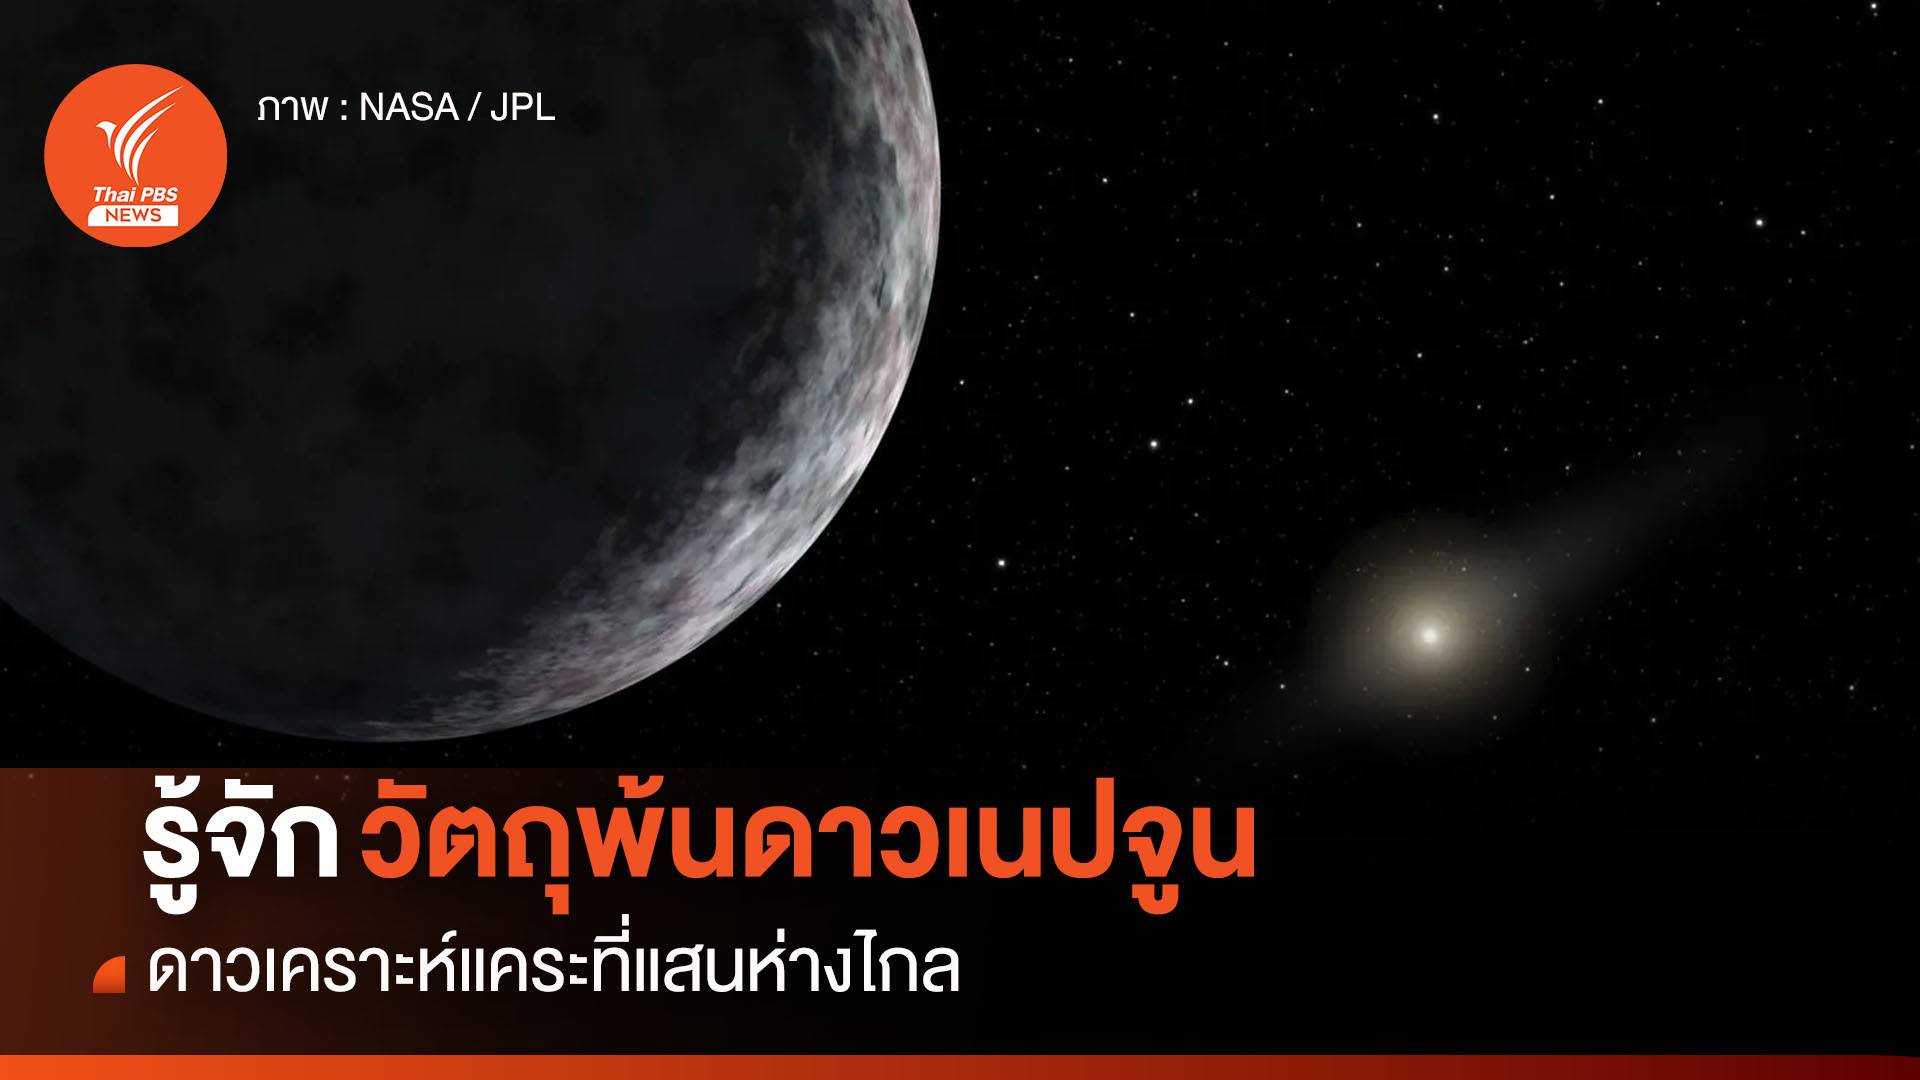 วัตถุพ้นดาวเนปจูน รู้จักดาวเคราะห์แคระที่แสนห่างไกล